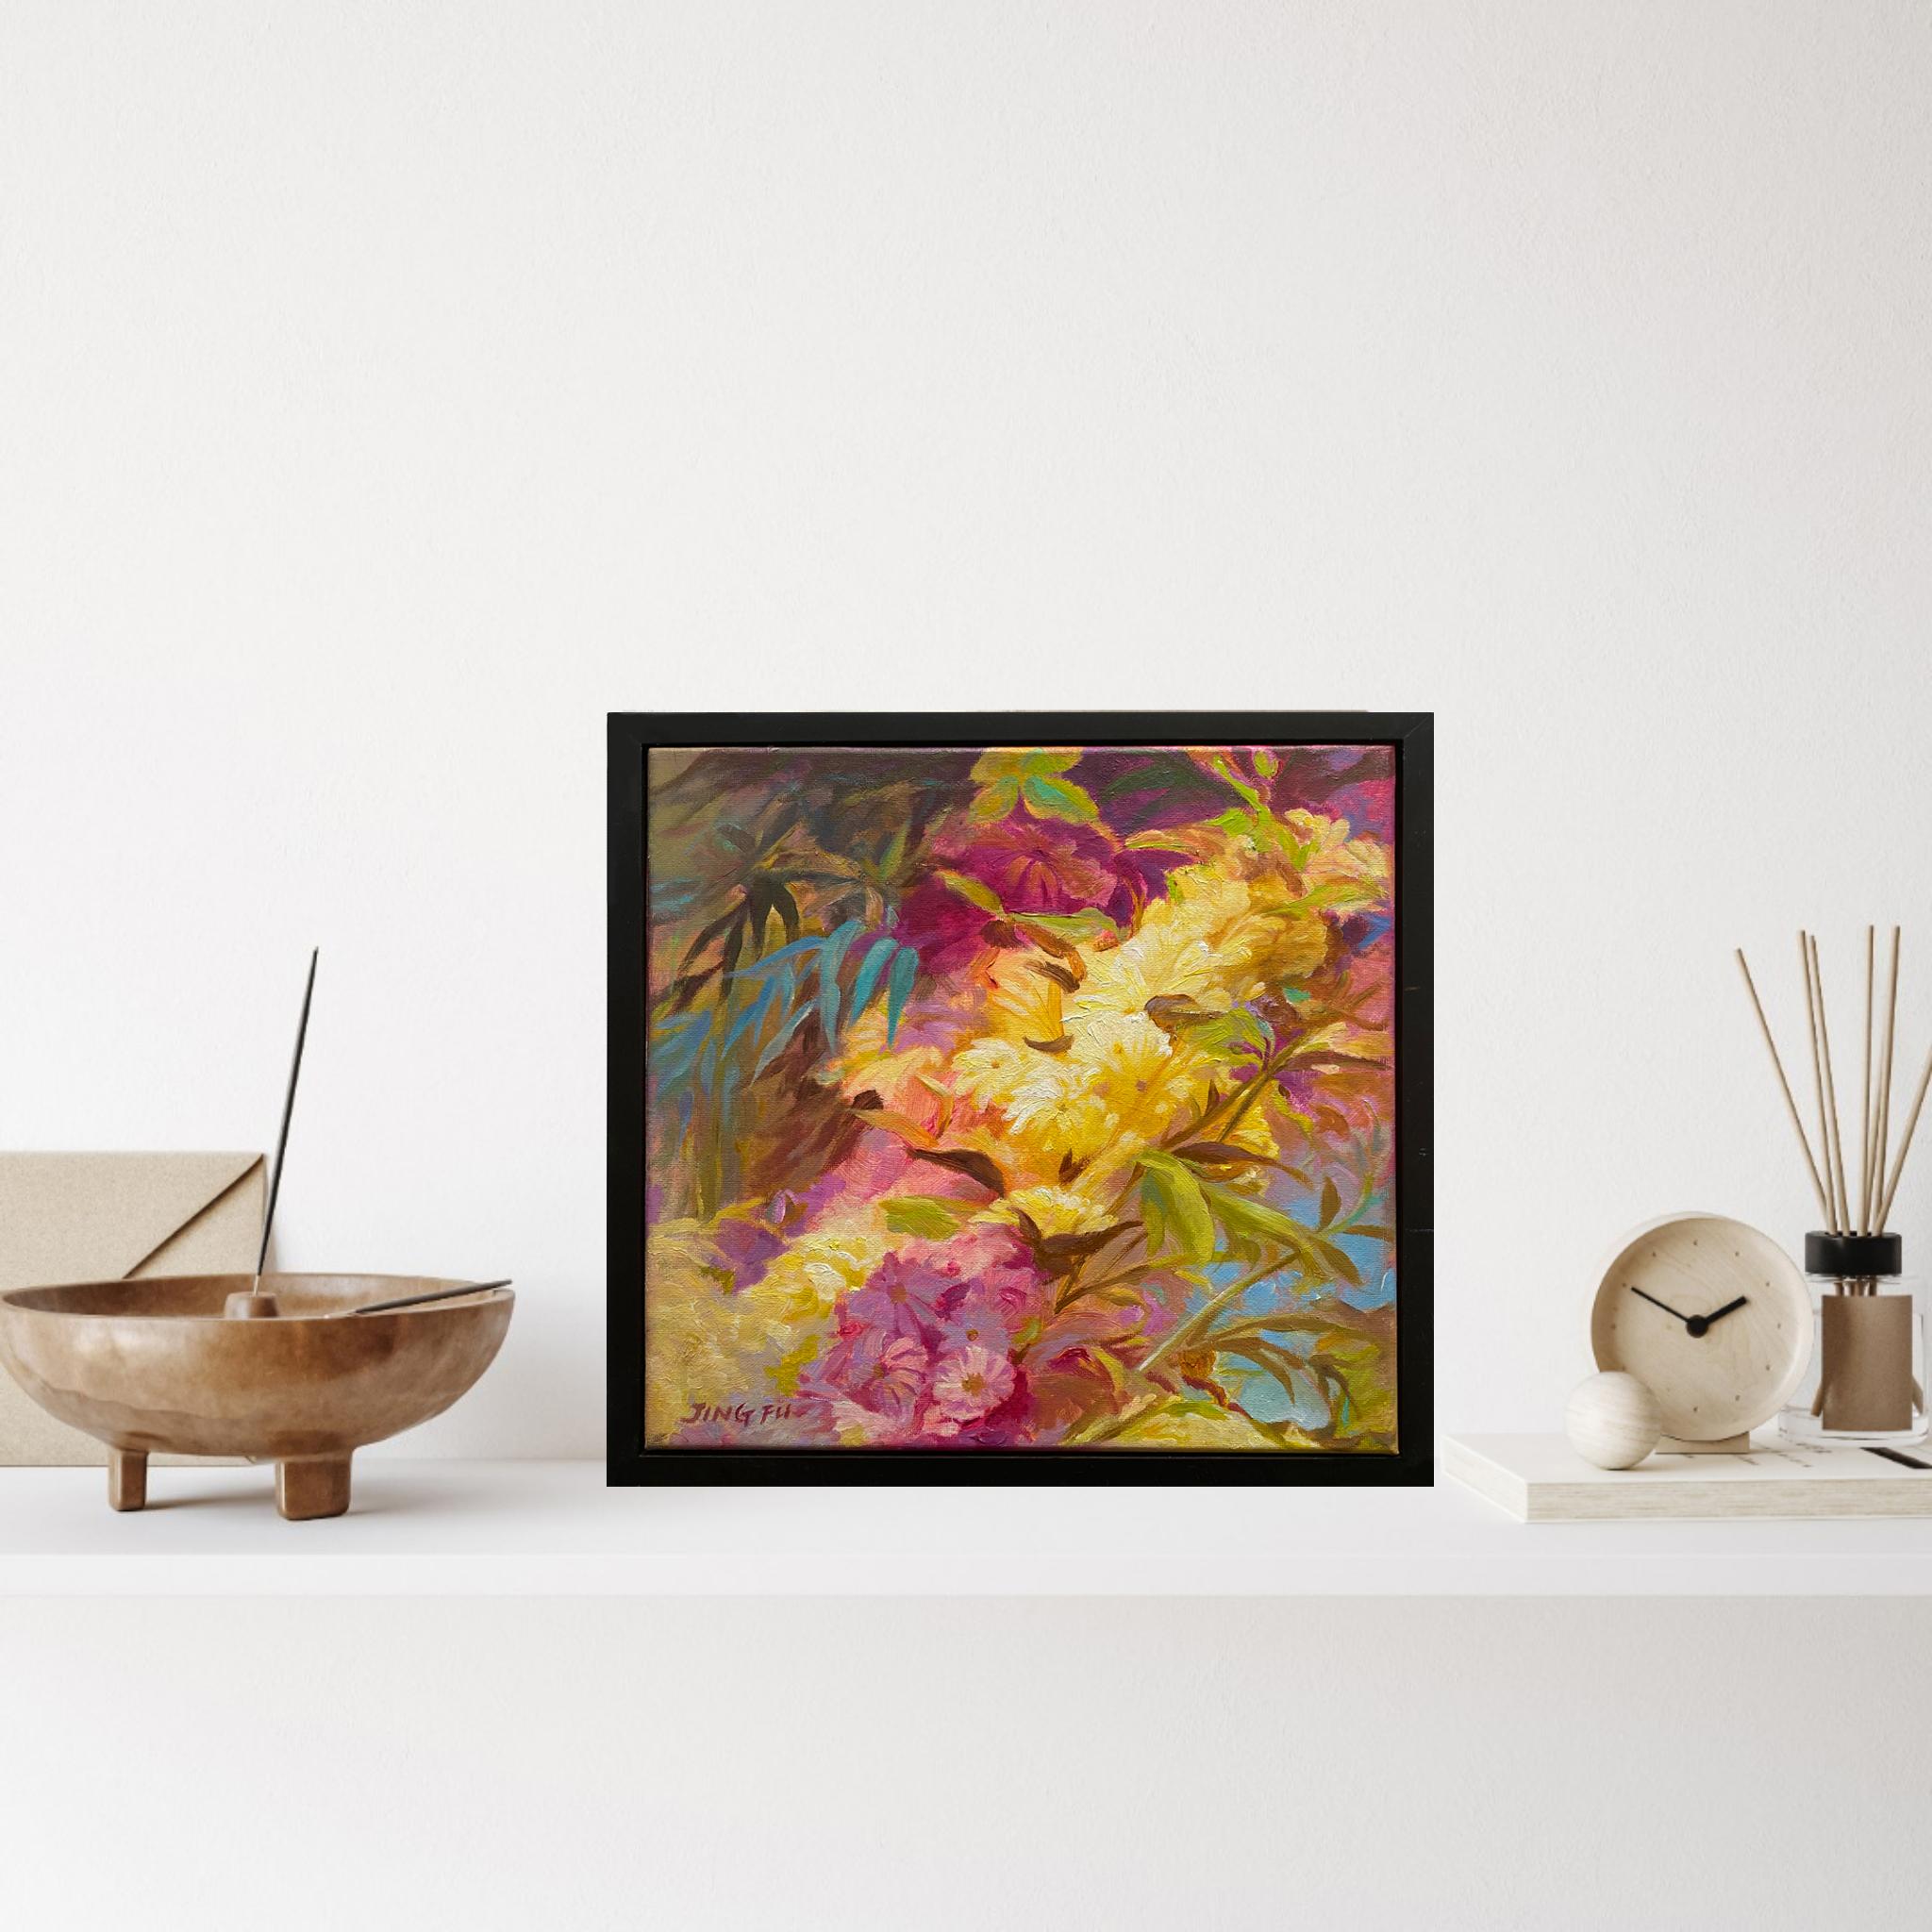 Zest (Blumenlandschaft gelb-rosa Blumengrüne Blätter) (Post-Impressionismus), Painting, von Jing Fu